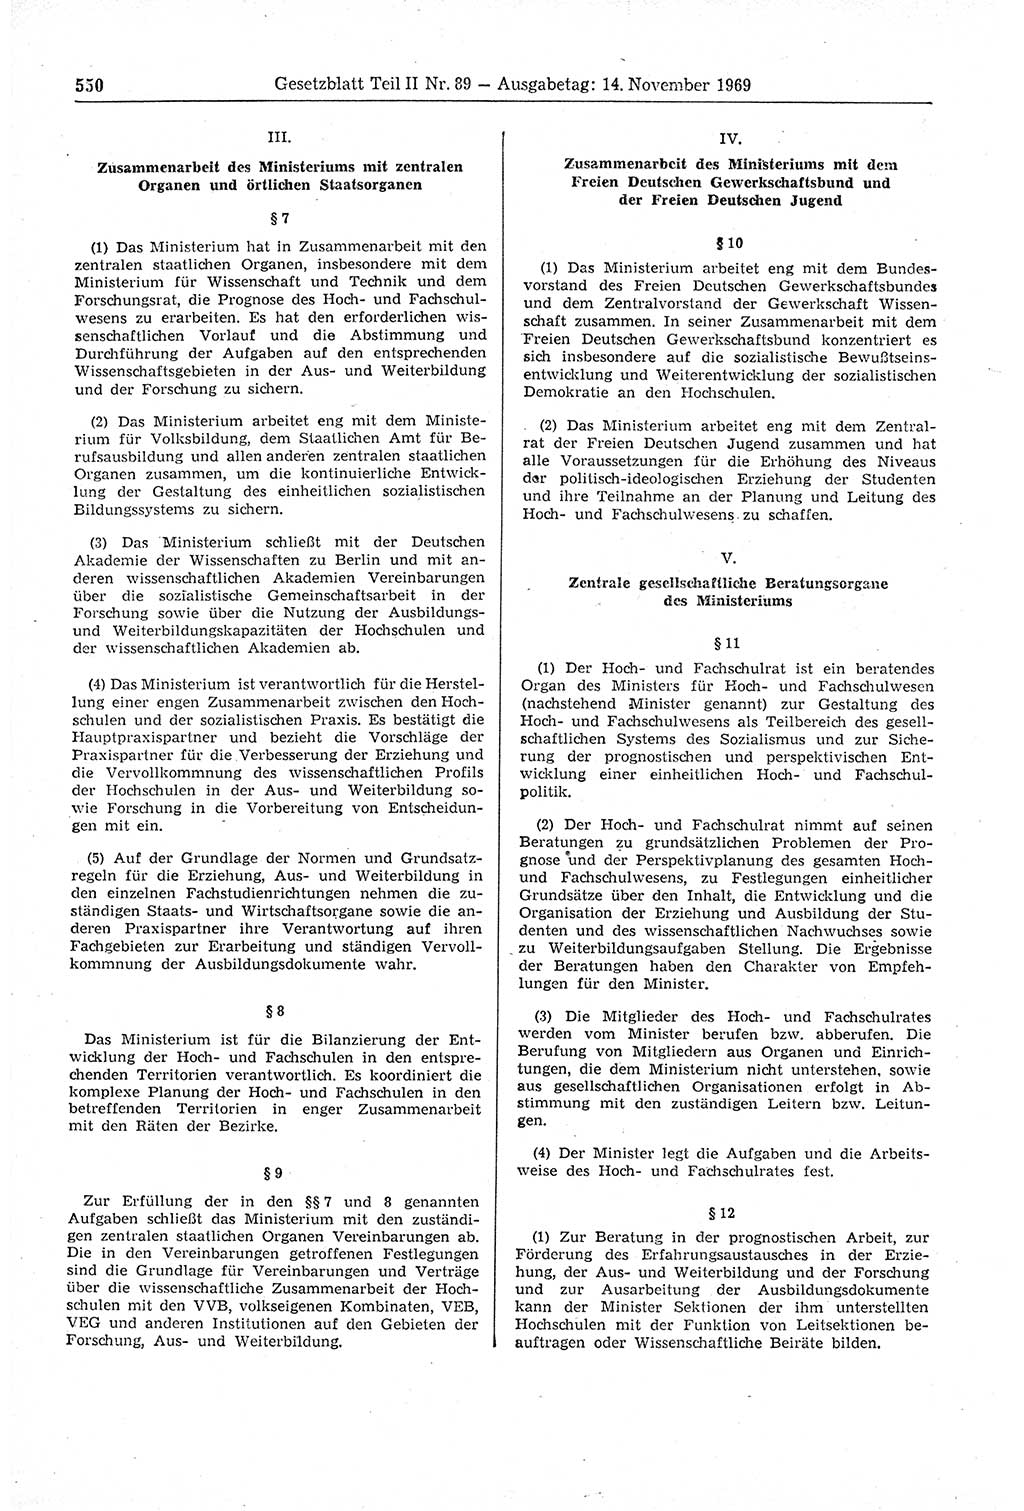 Gesetzblatt (GBl.) der Deutschen Demokratischen Republik (DDR) Teil ⅠⅠ 1969, Seite 550 (GBl. DDR ⅠⅠ 1969, S. 550)